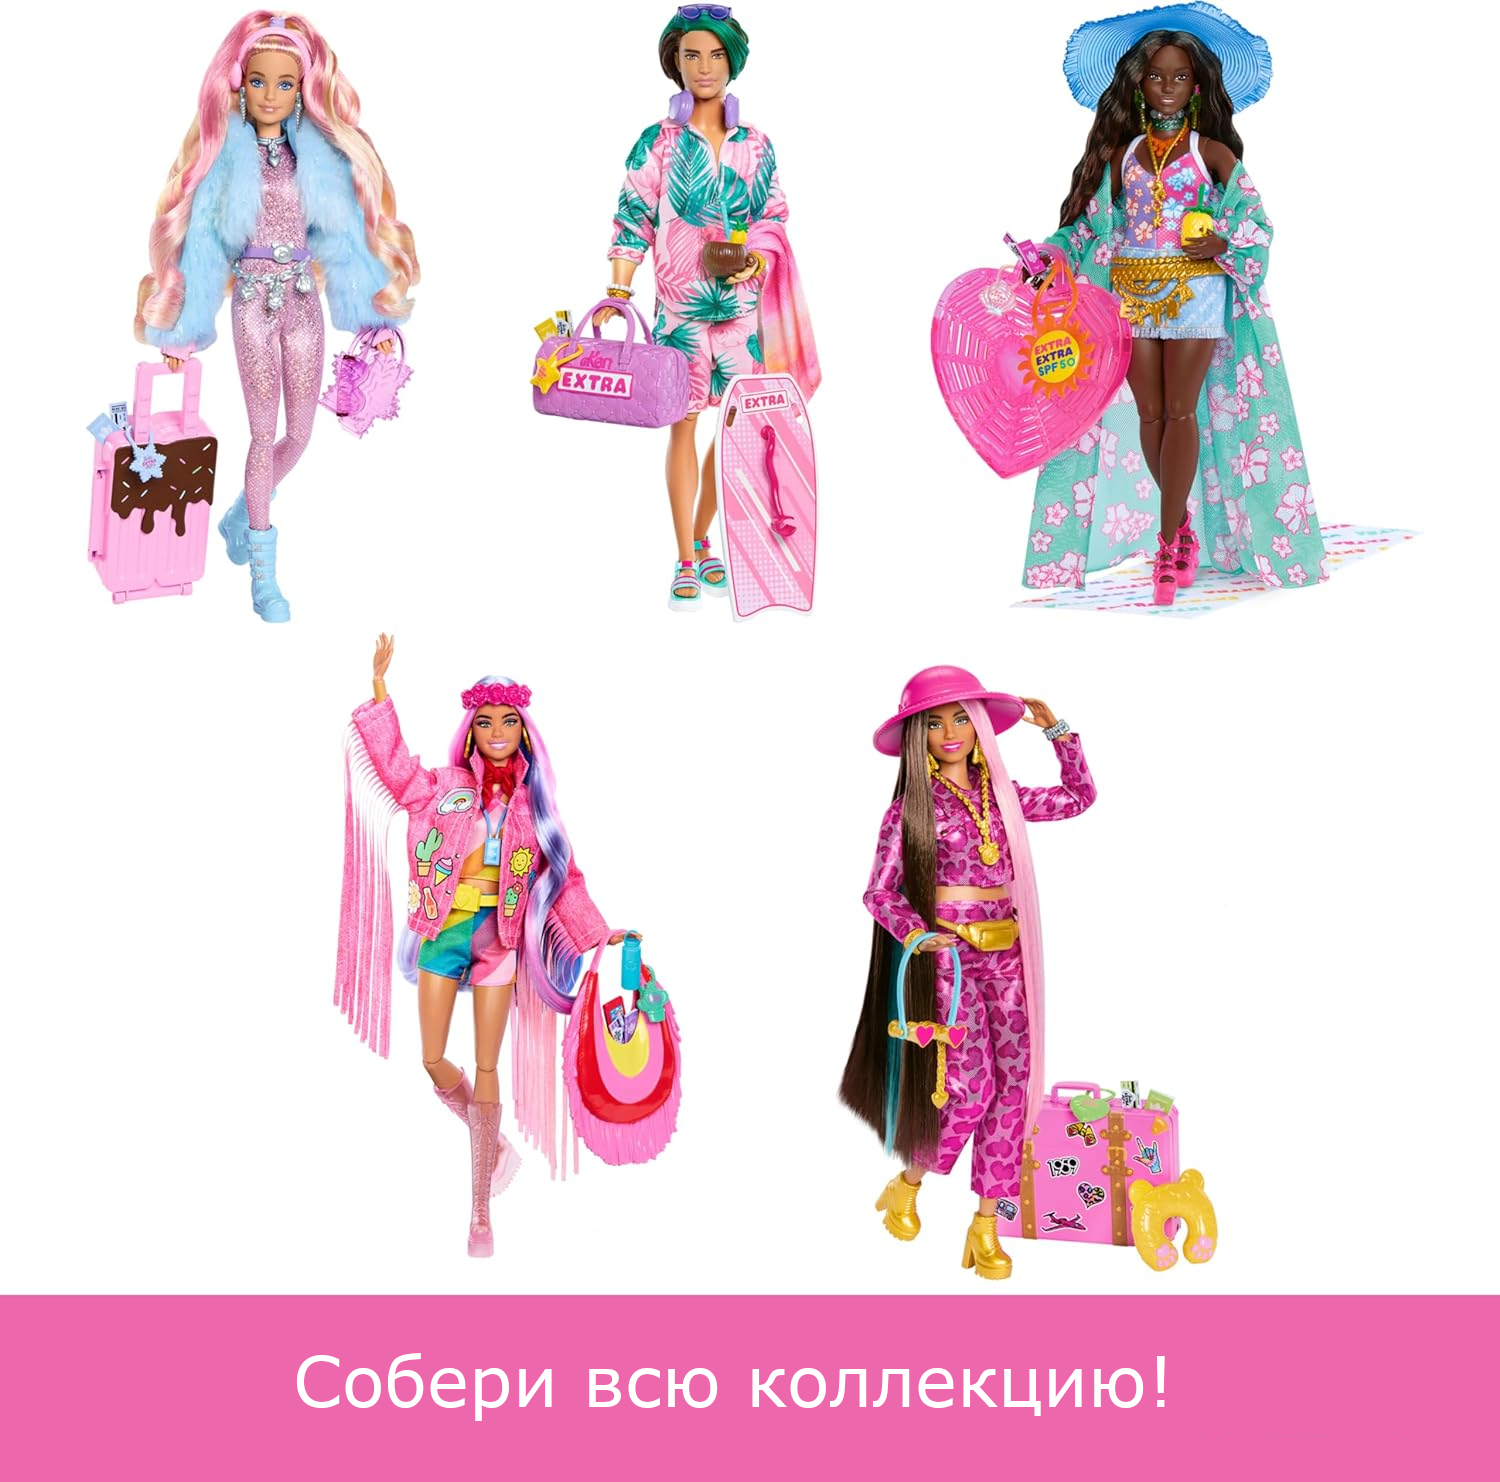 Кукла Barbie Extra Fly Кен с пляжной одеждой HNP86 HNP86 - фото 6